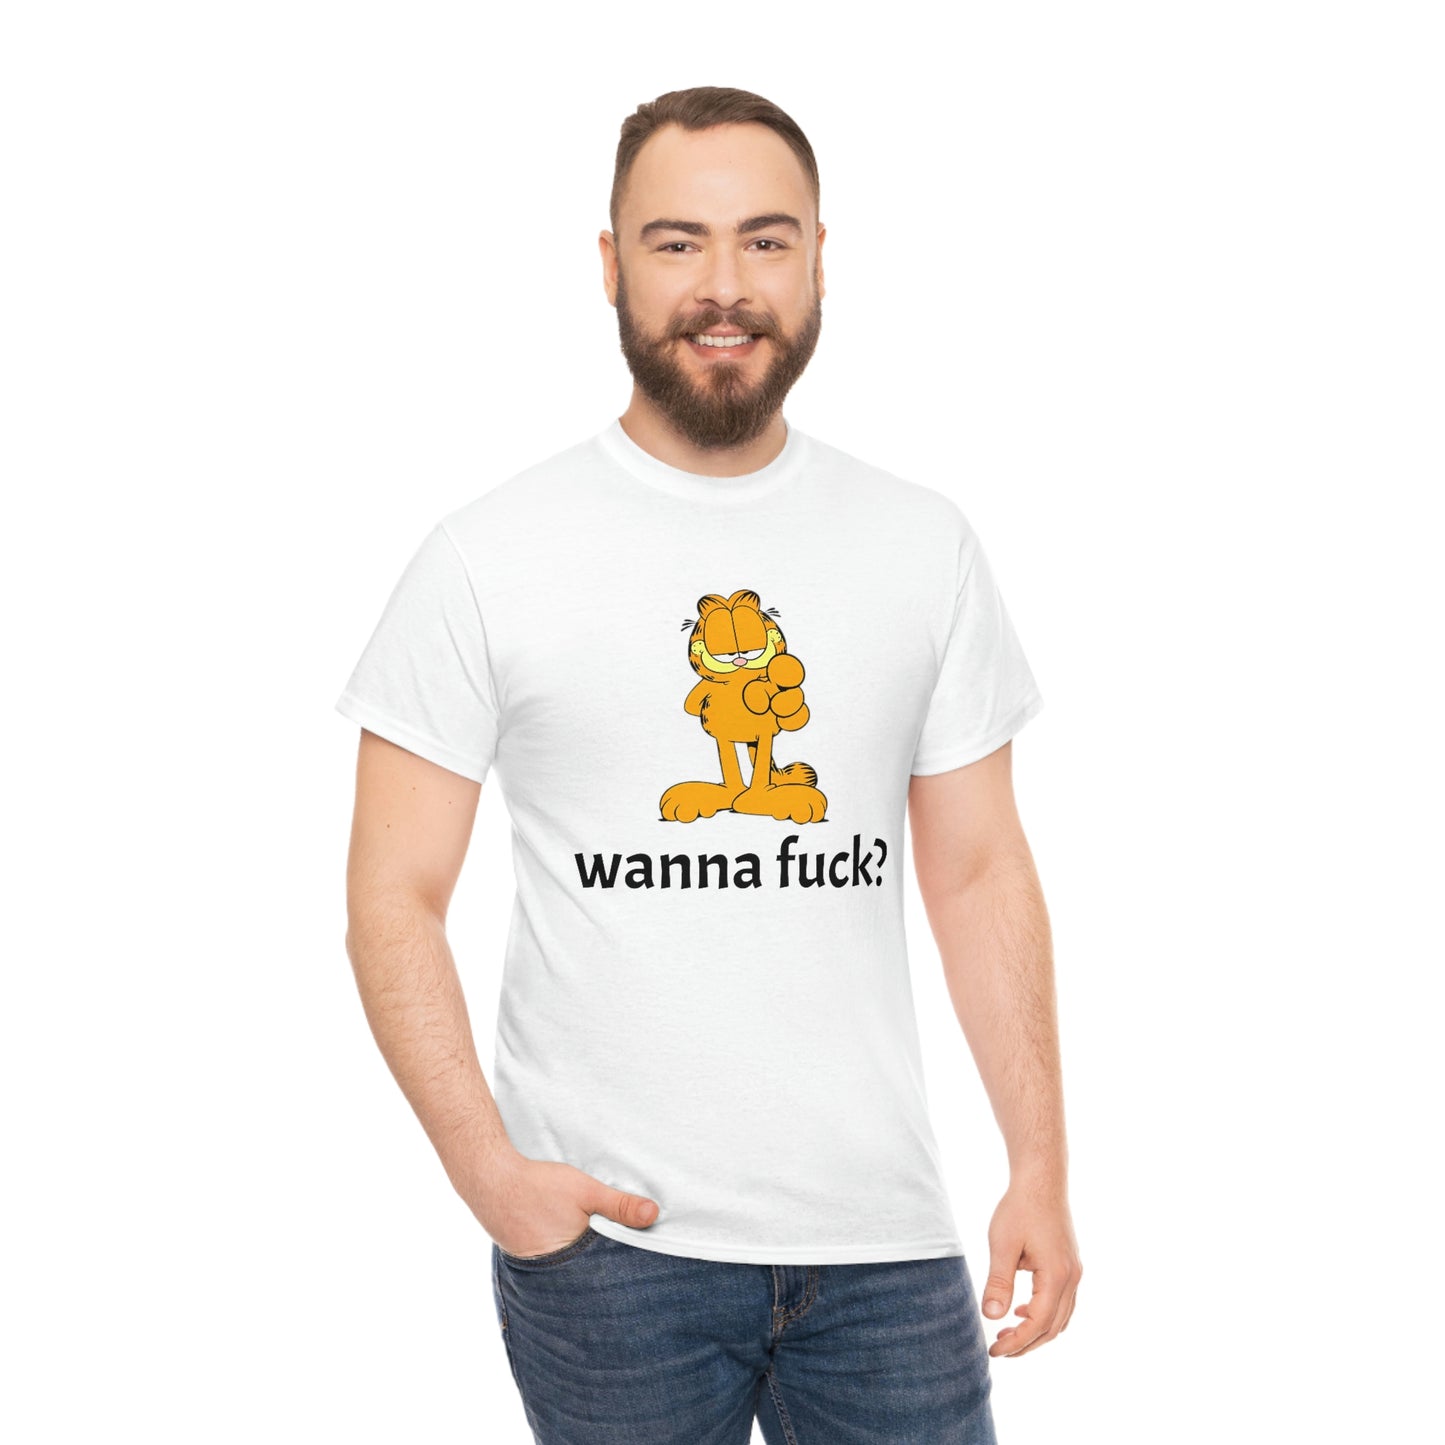 WANNA FUCK T-SHIRT